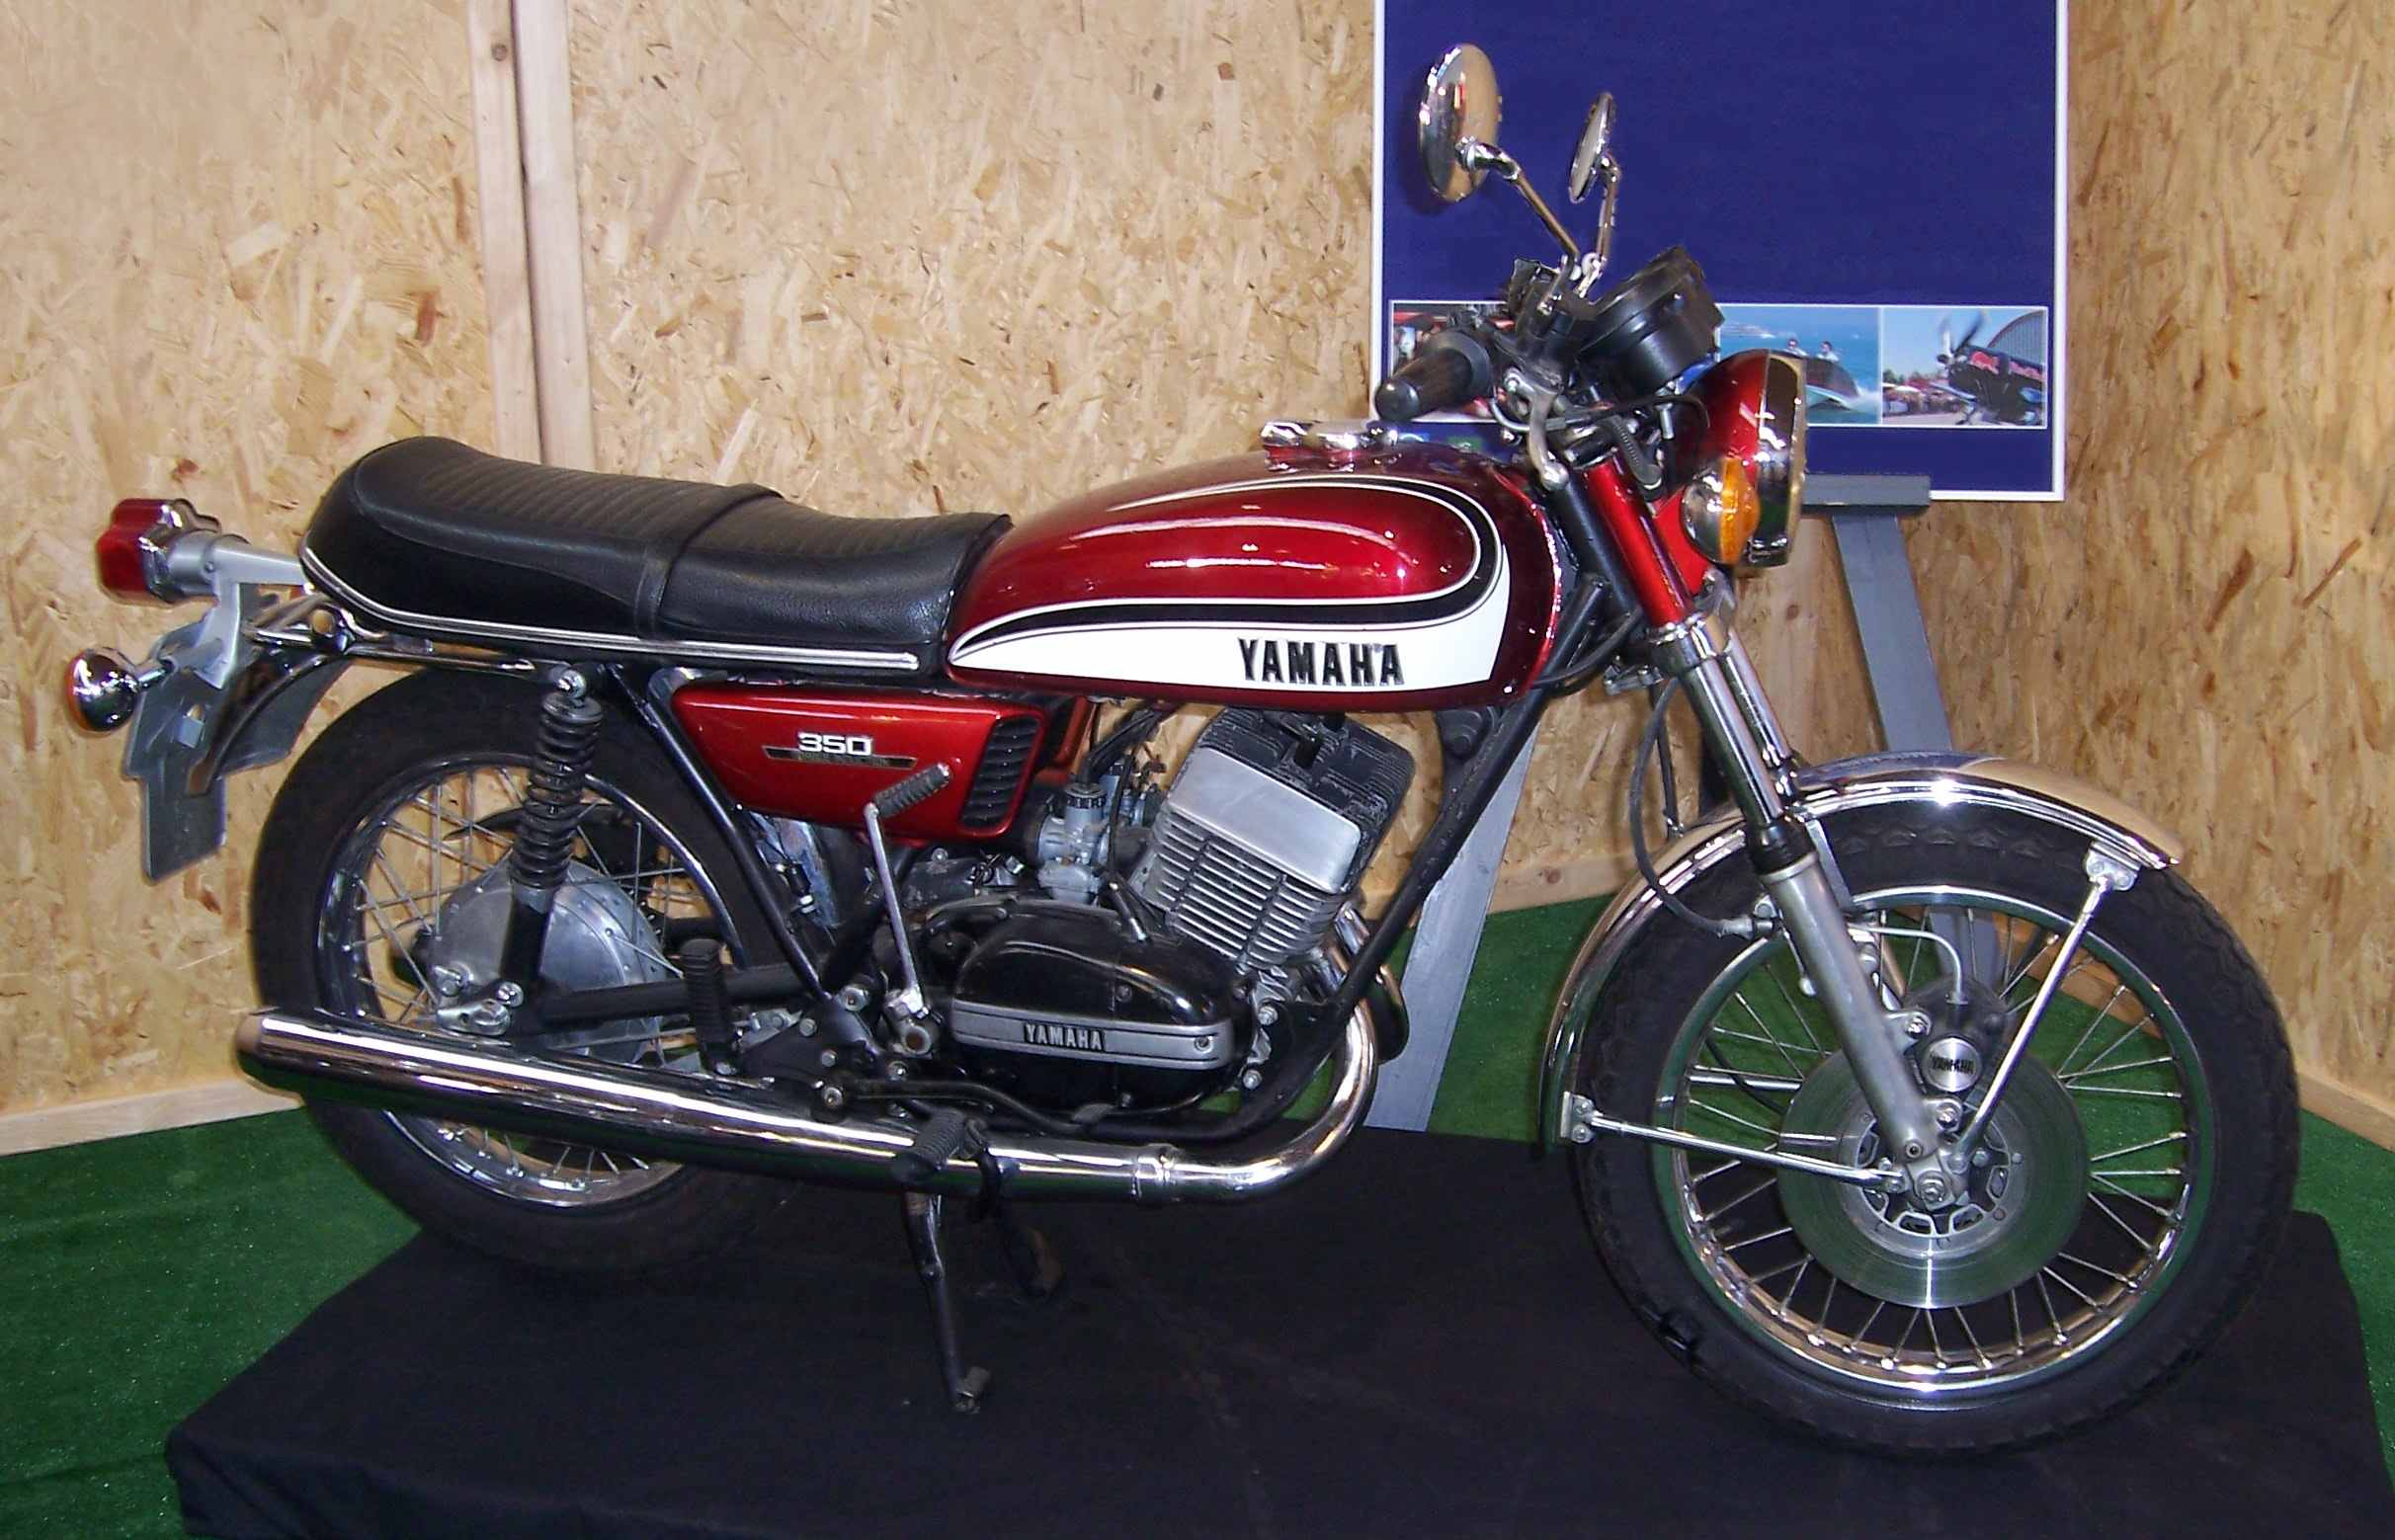 Moto del día: Yamaha RD 350